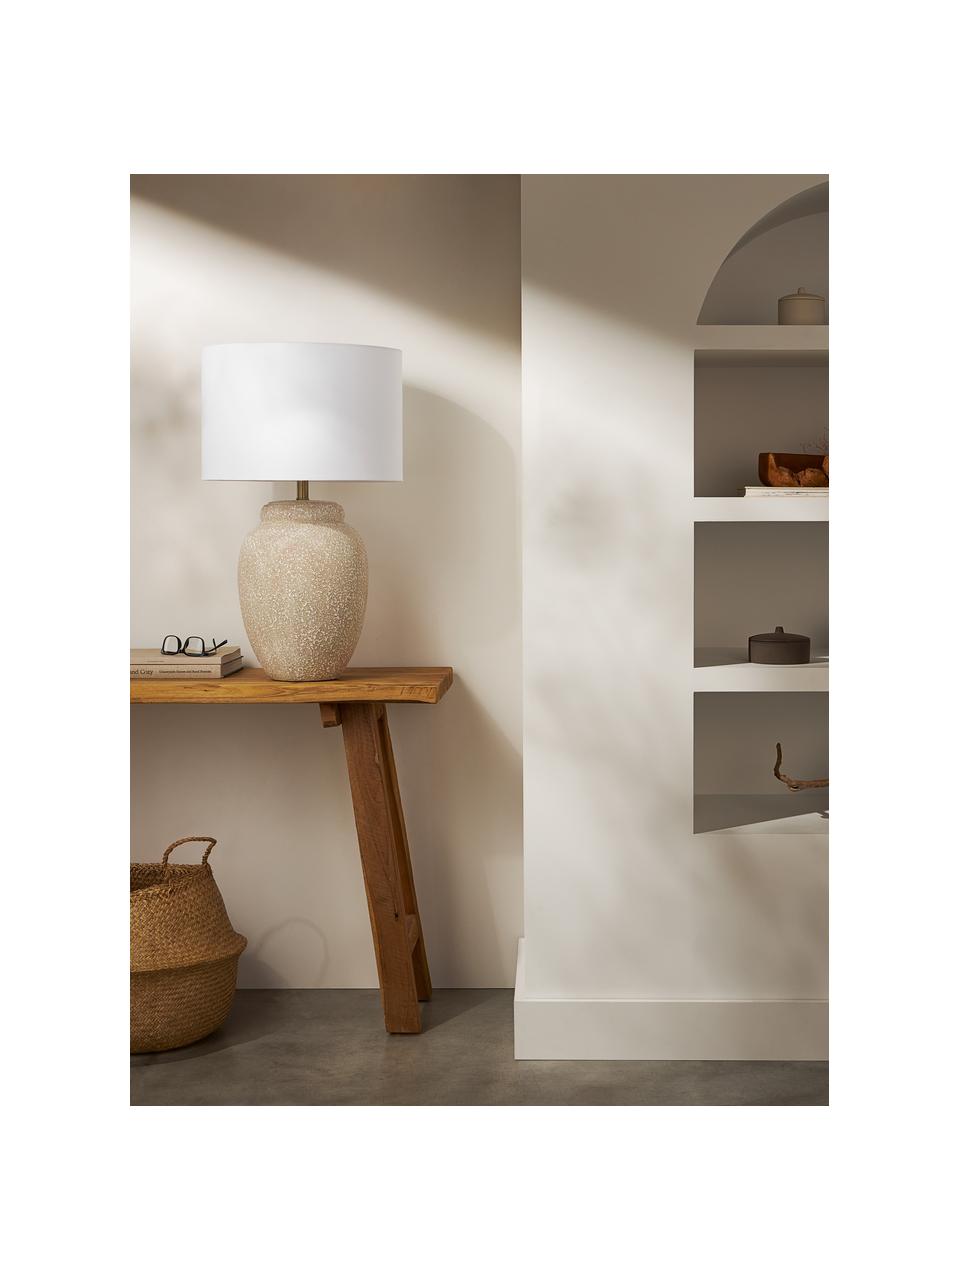 Grote tafellamp Bodhi met keramische voet, Lampenkap: linnen, Lampvoet: keramiek, Wit, beige, Ø 43 x H 71 cm